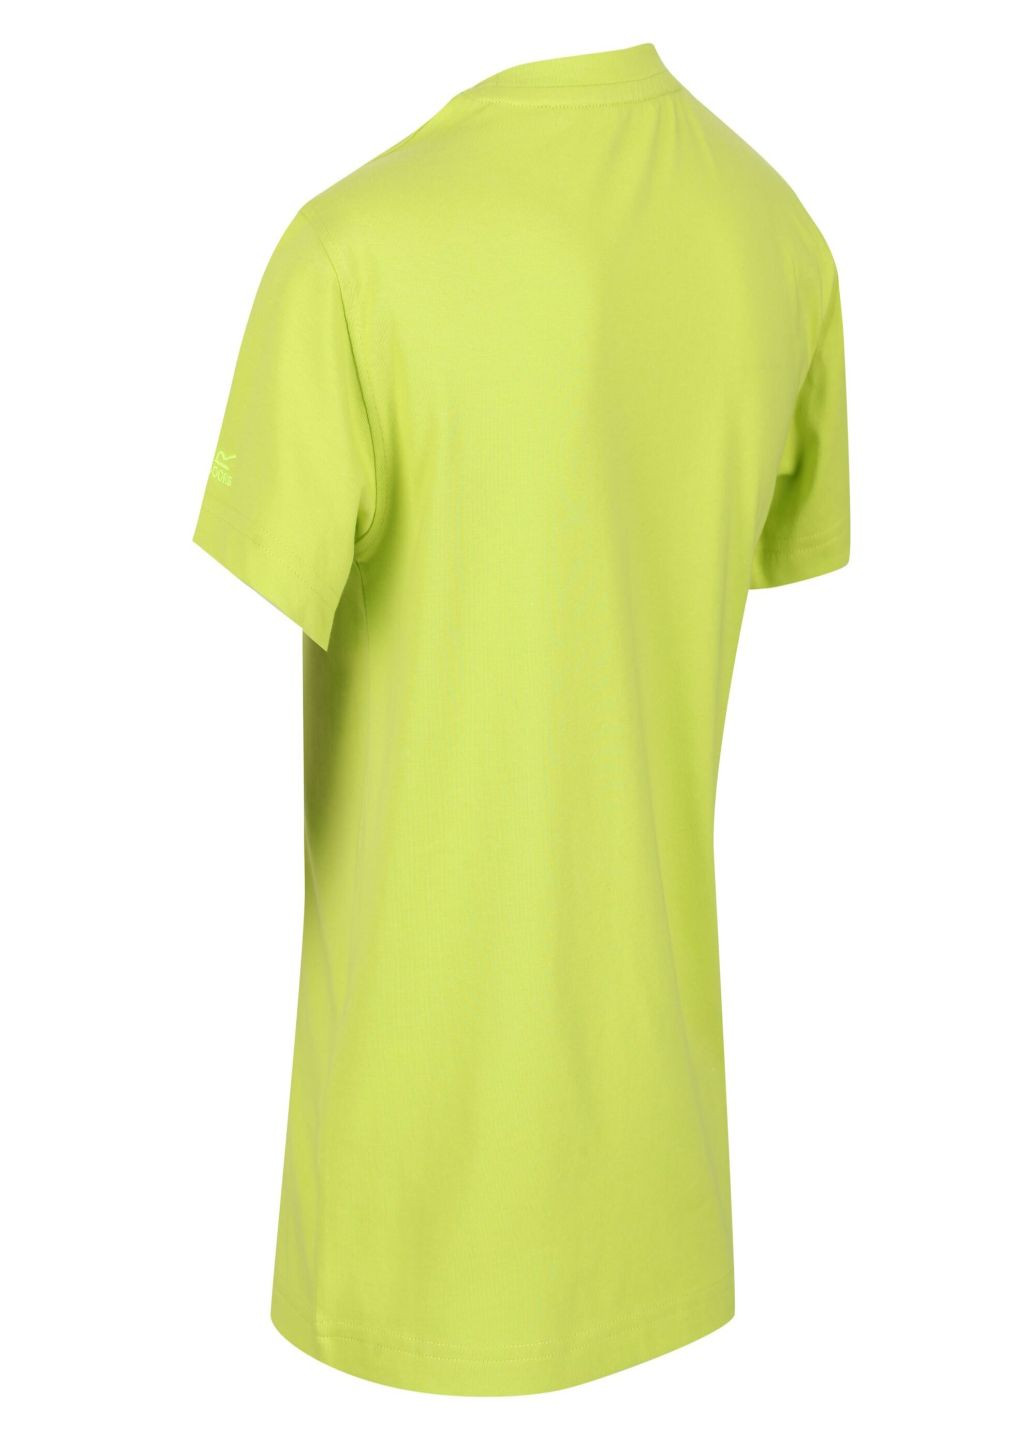 Салатовая летняя футболка Regatta